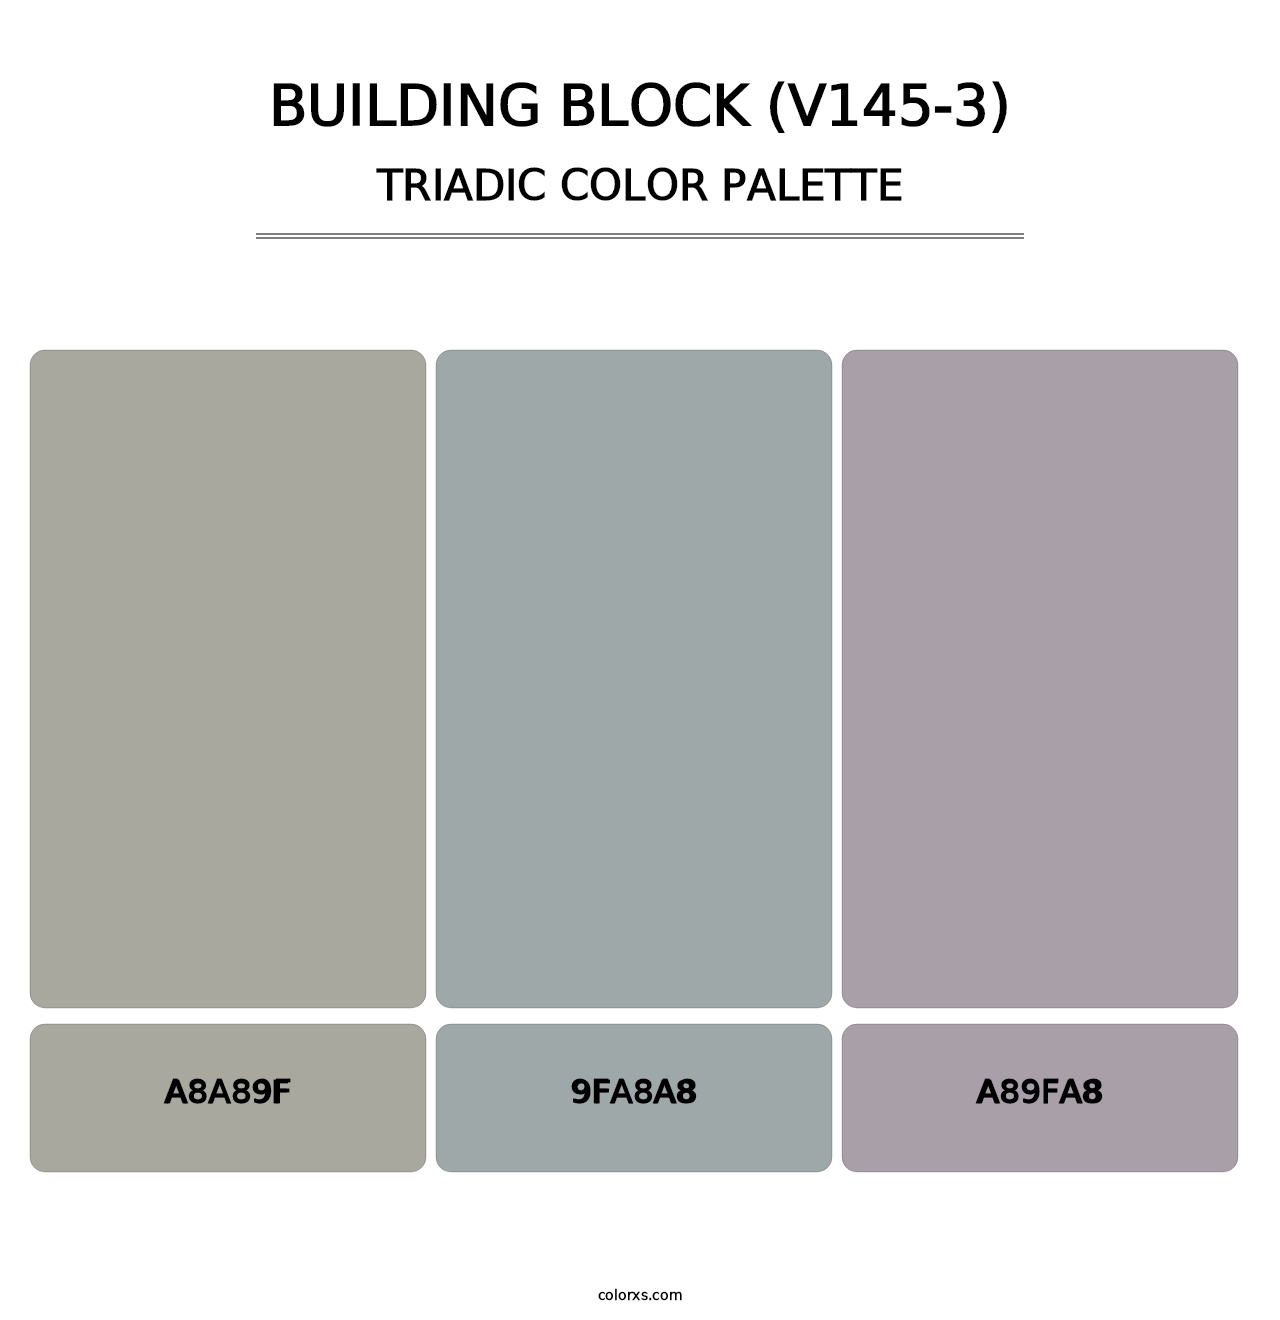 Building Block (V145-3) - Triadic Color Palette